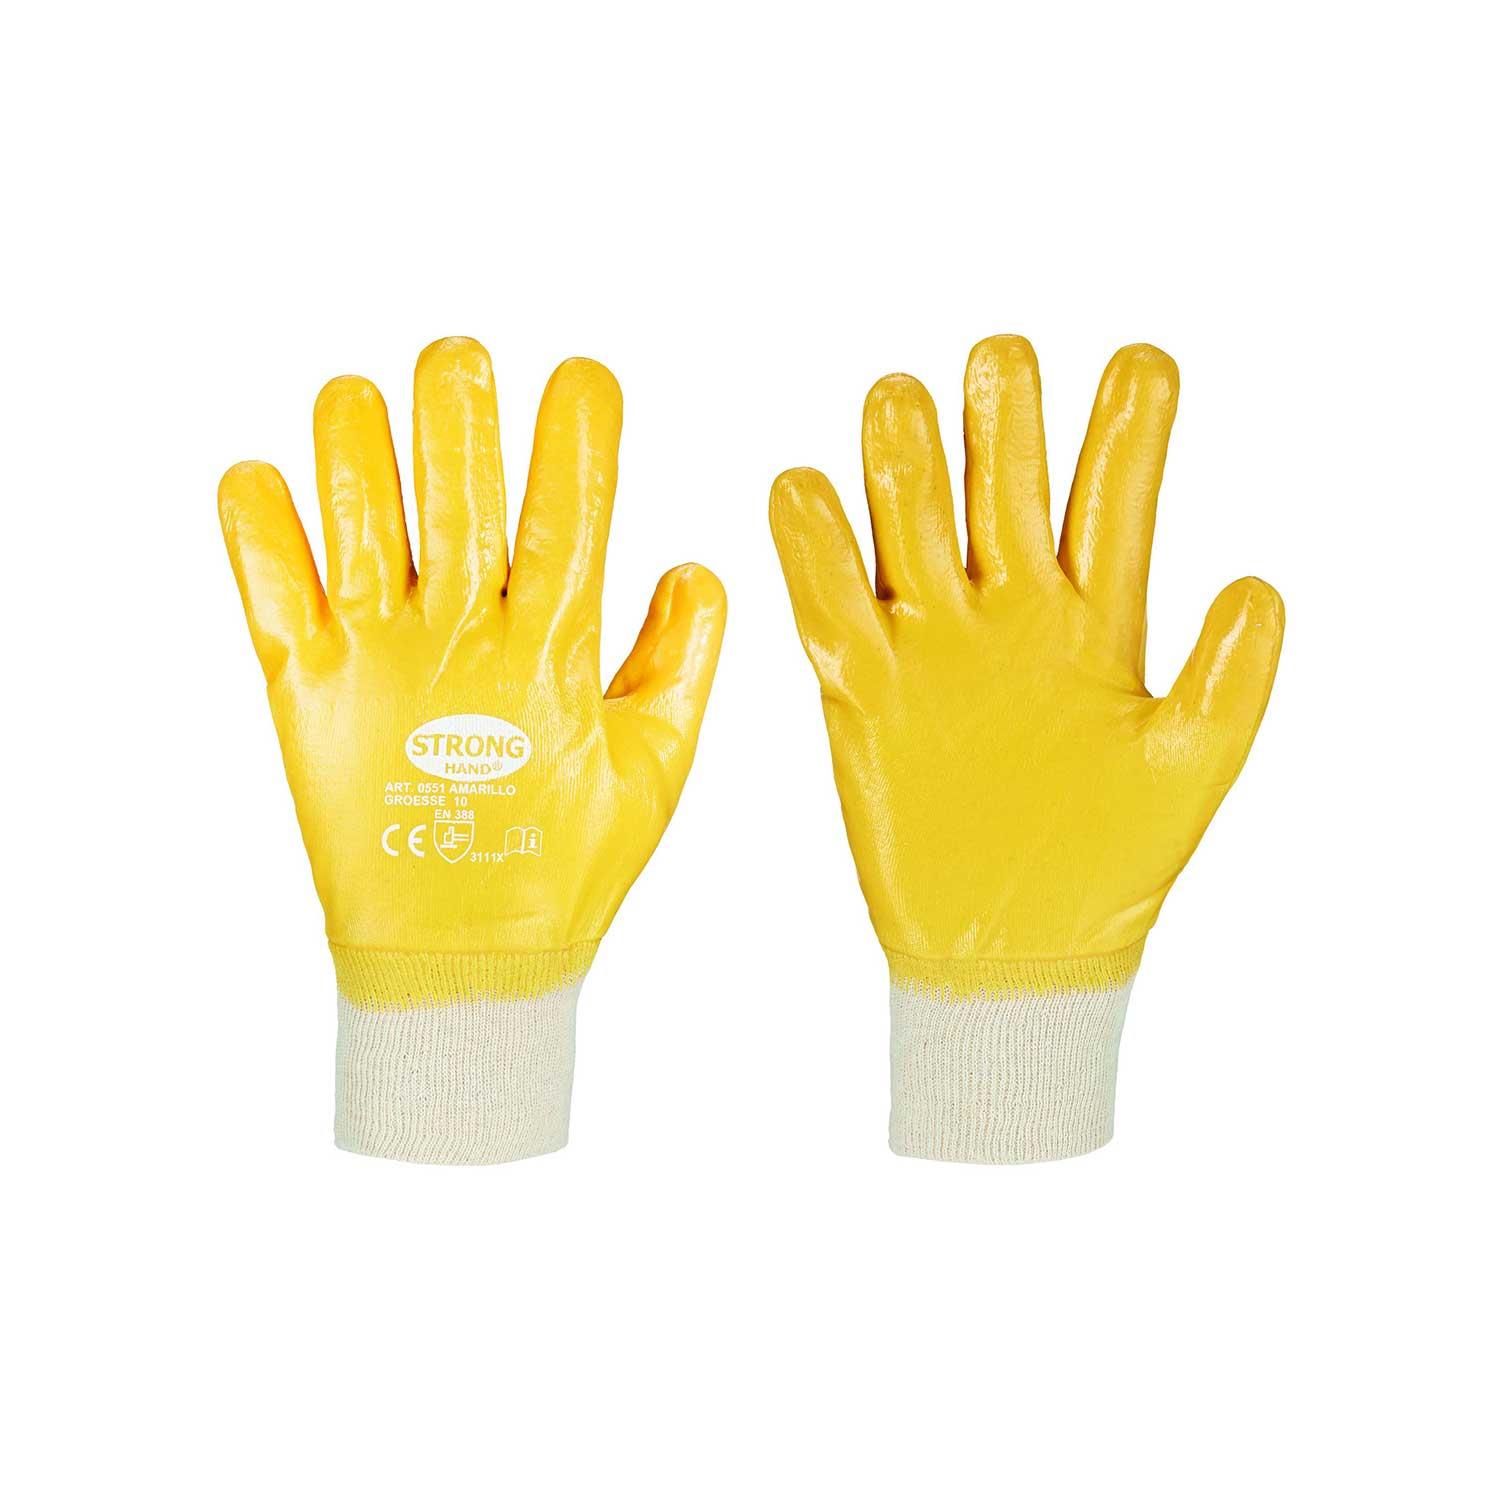 Amarillo Stronghand Handschuh, Nitril gelb, vollbeschichtet, Gr. 9